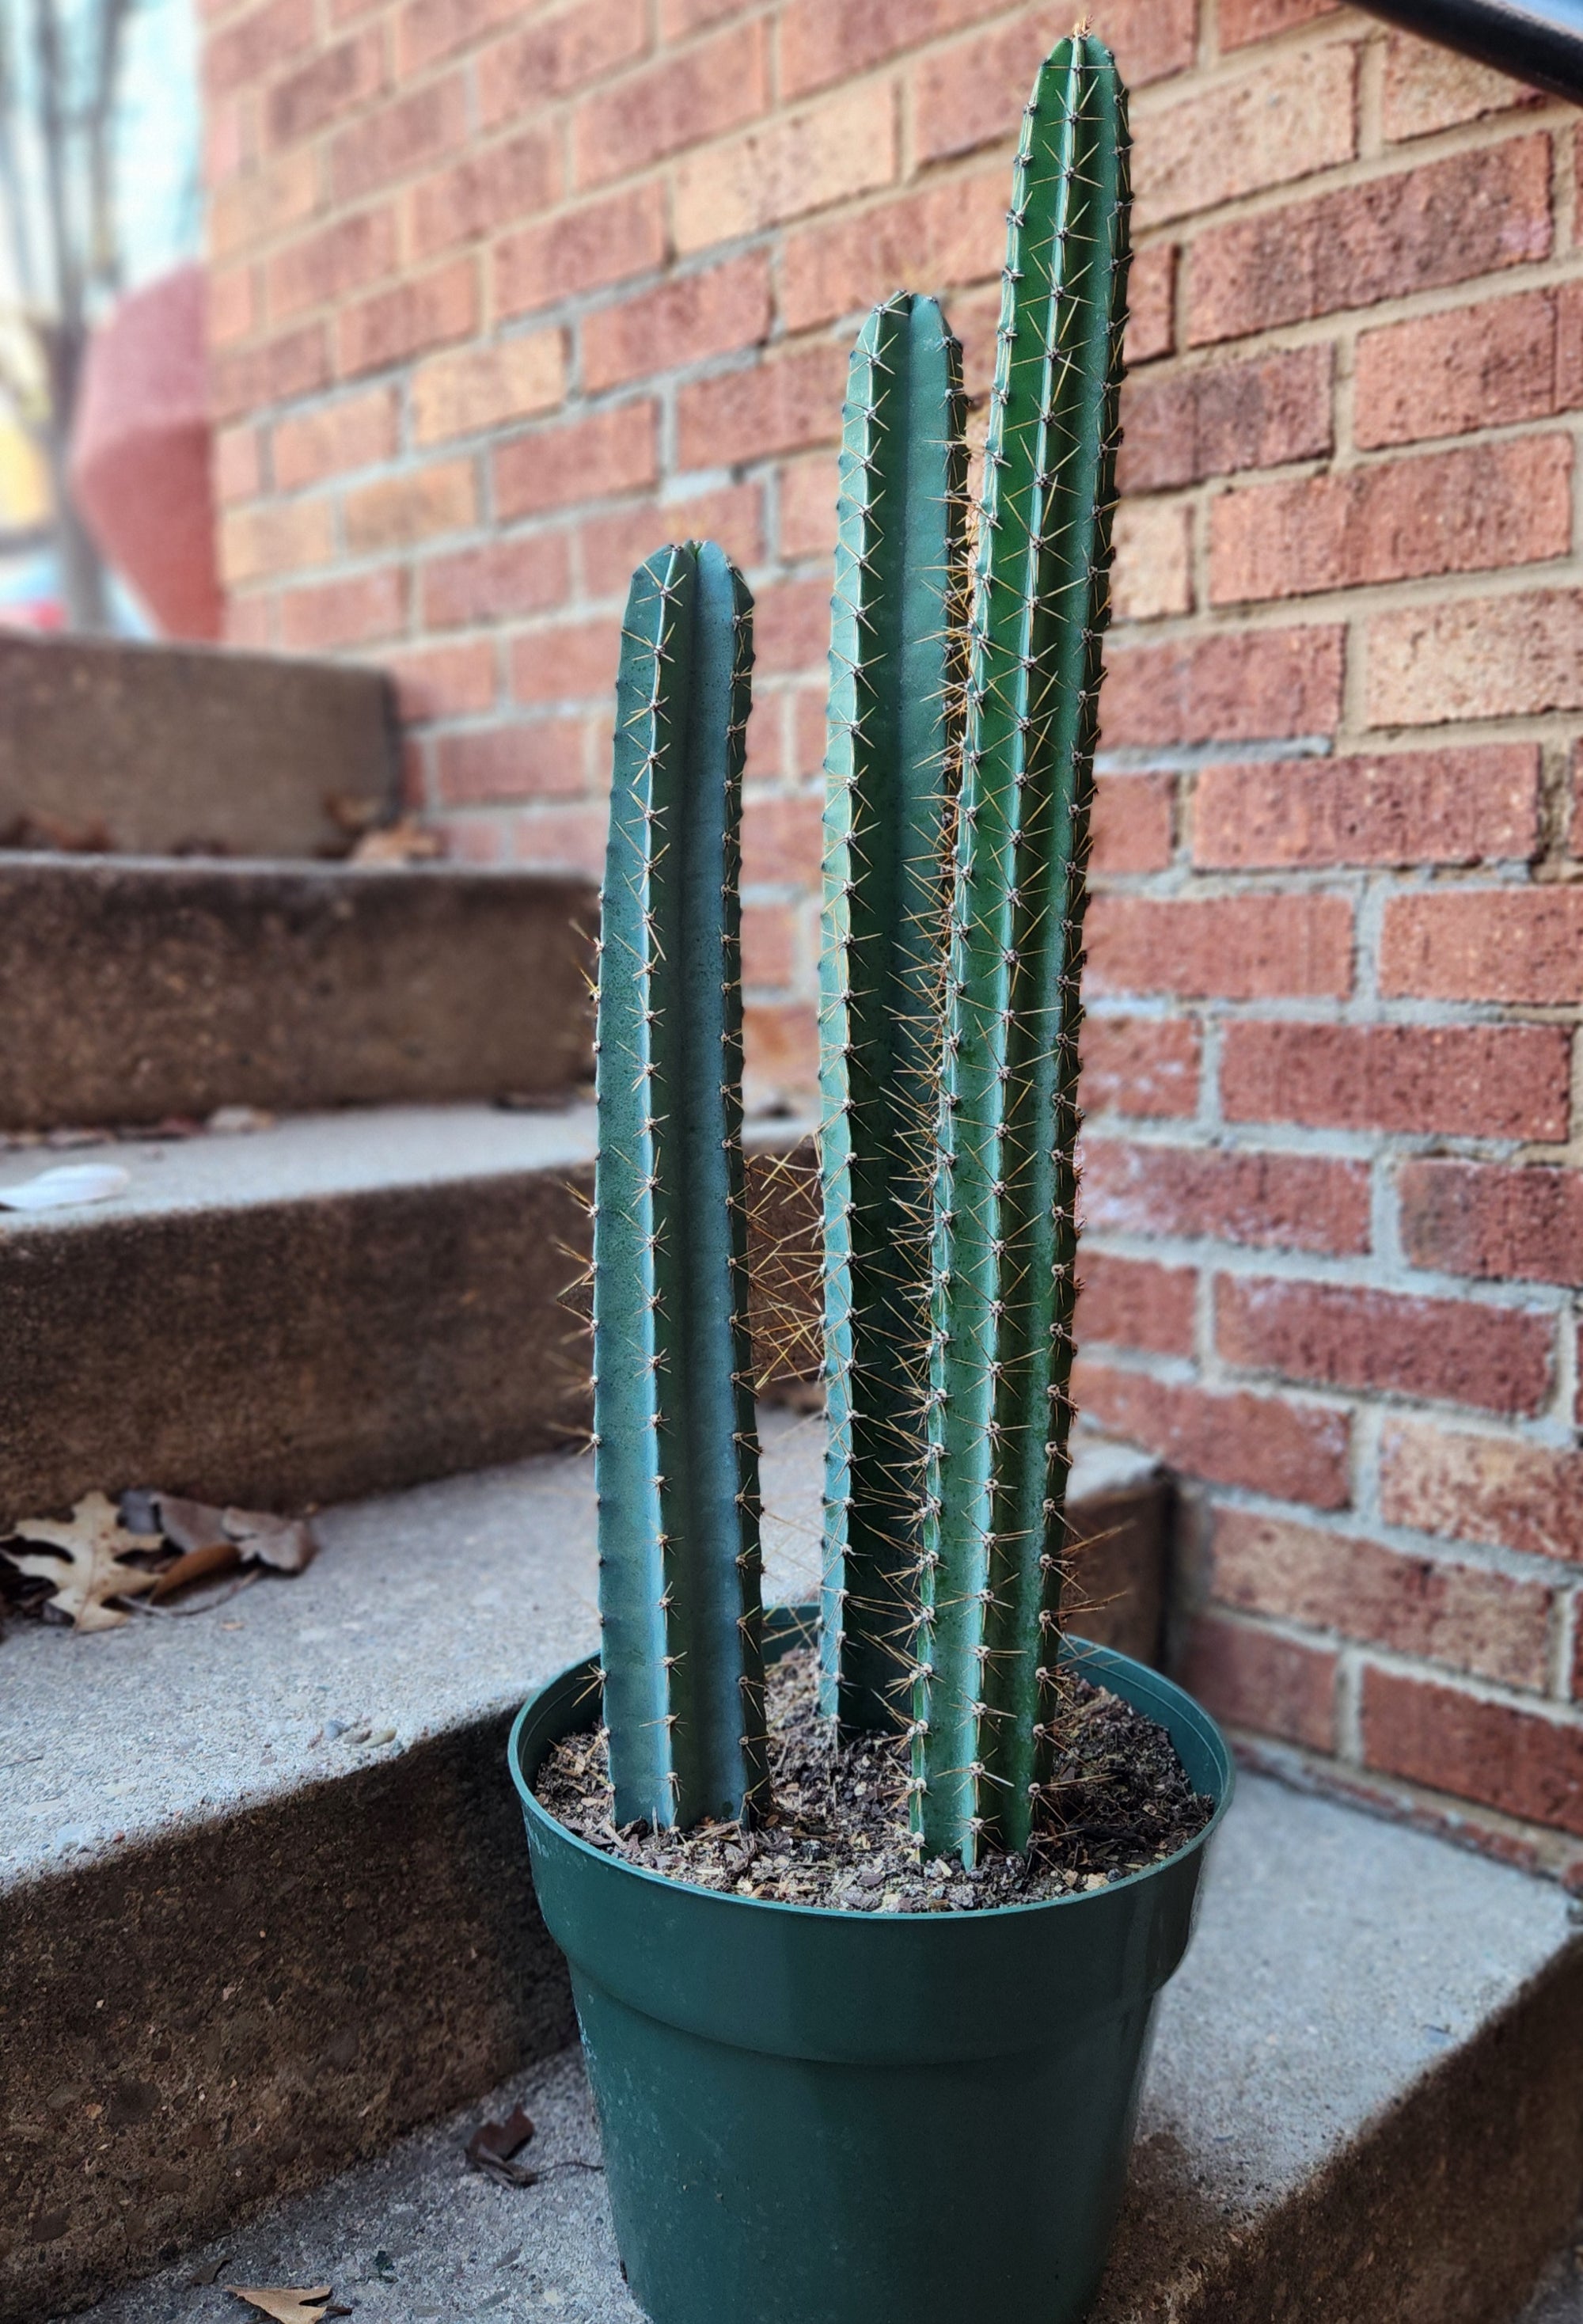 10" Polaskia Chichipe Cactus